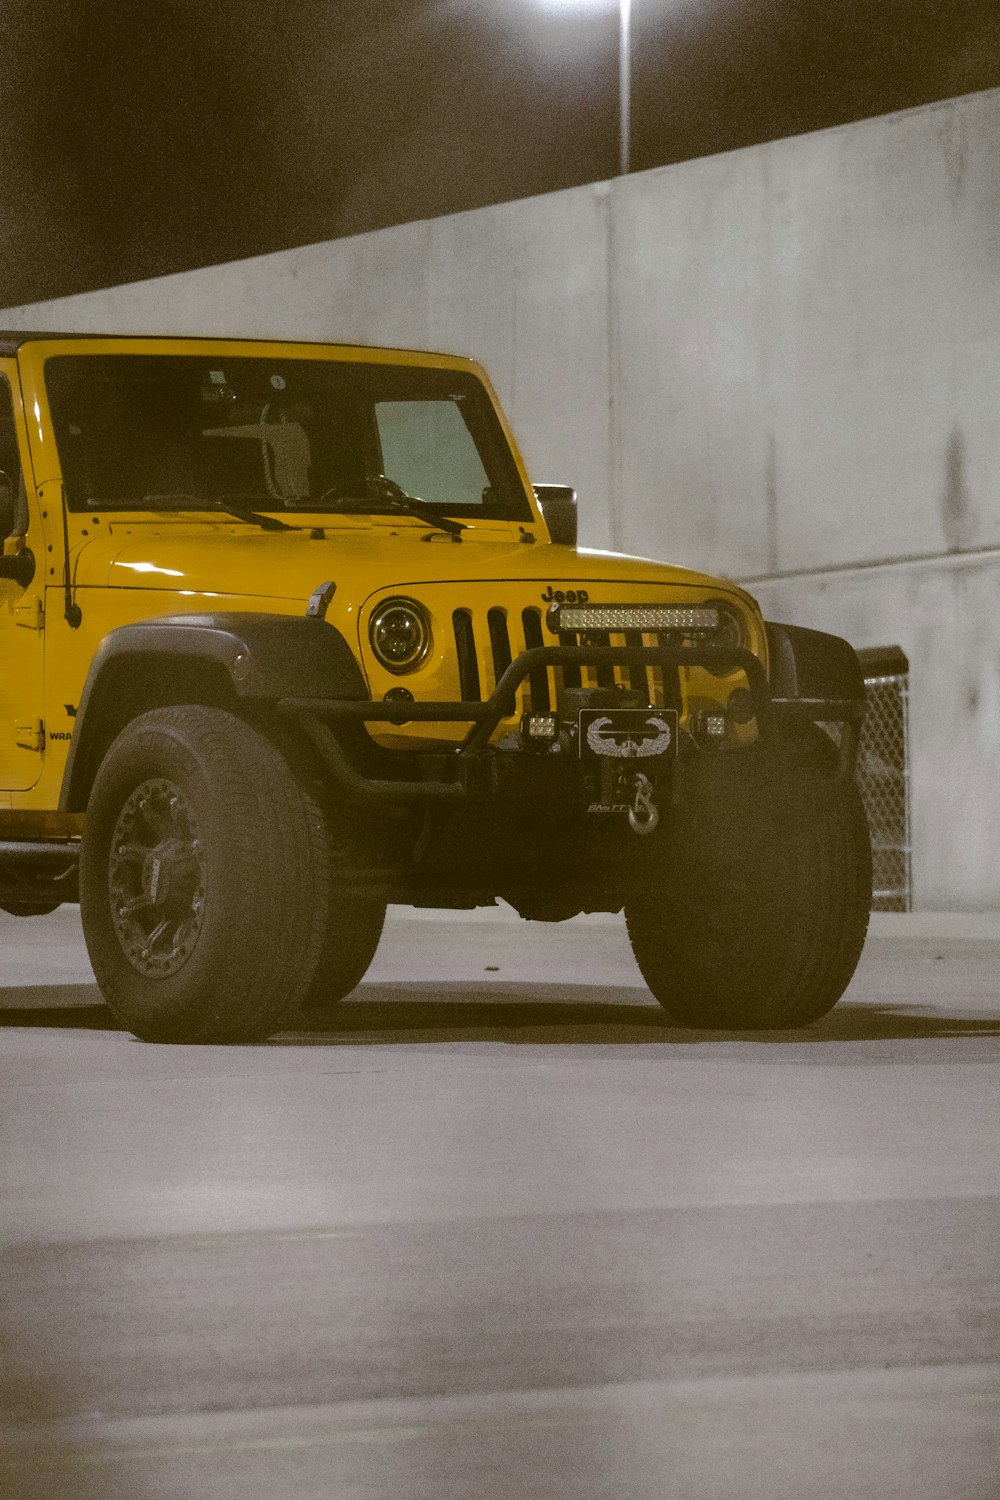 Ein gelber Jeep, der in einem Parkhaus geparkt ist